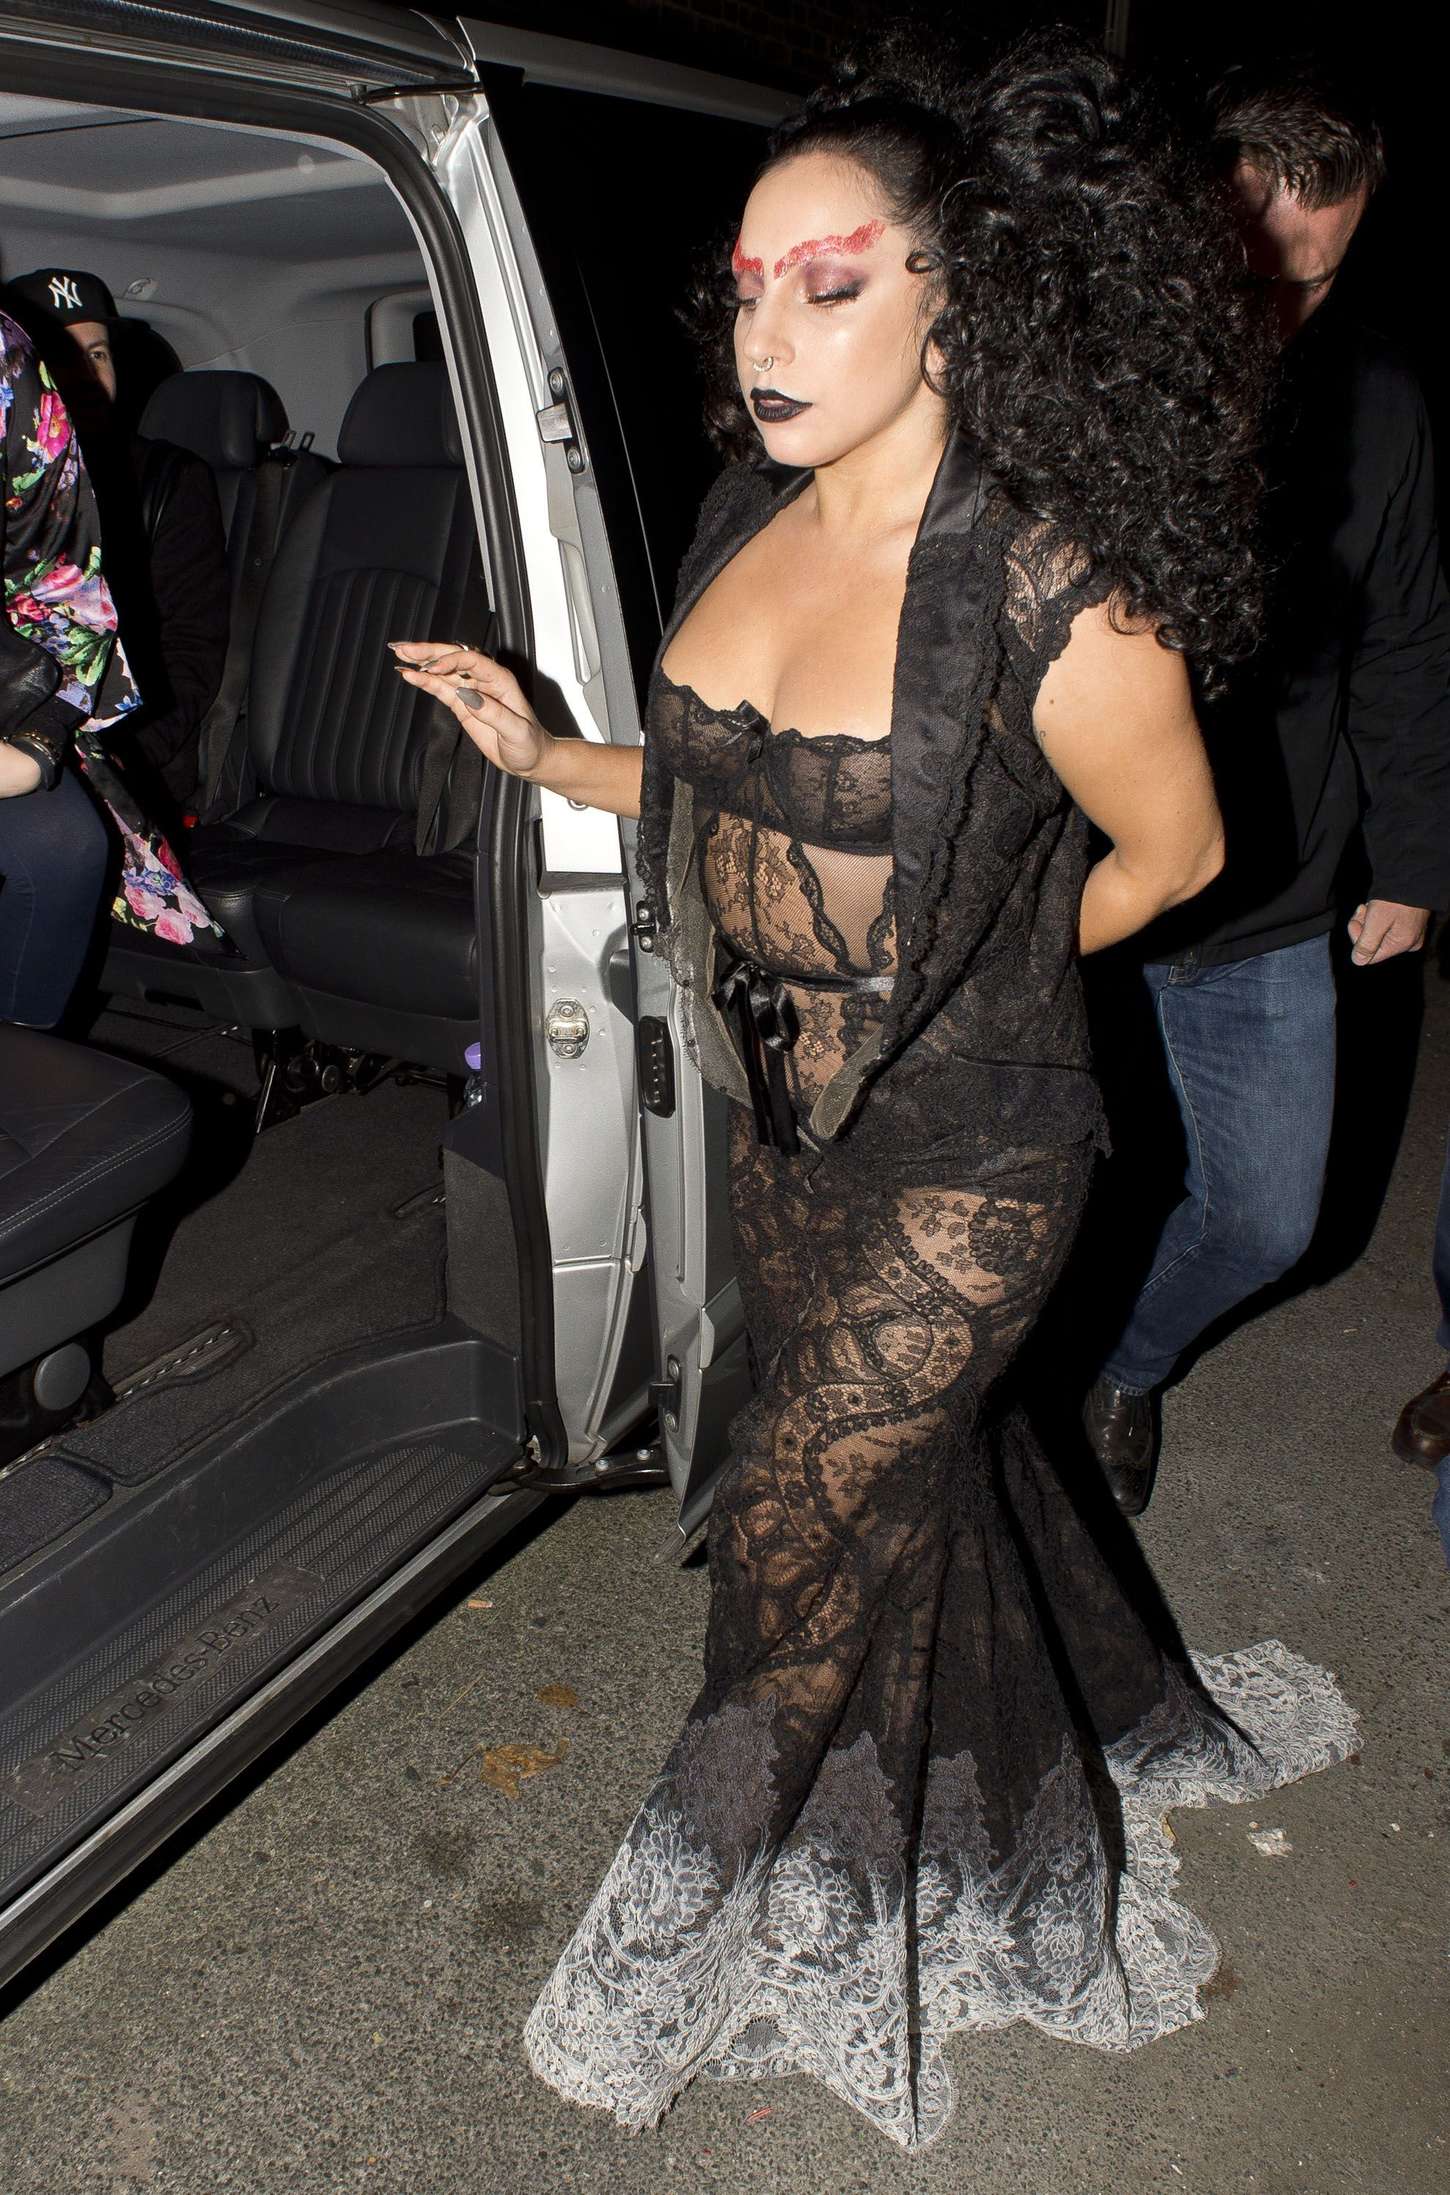 Lady-Gaga-in-Black-Dress--02.jpg